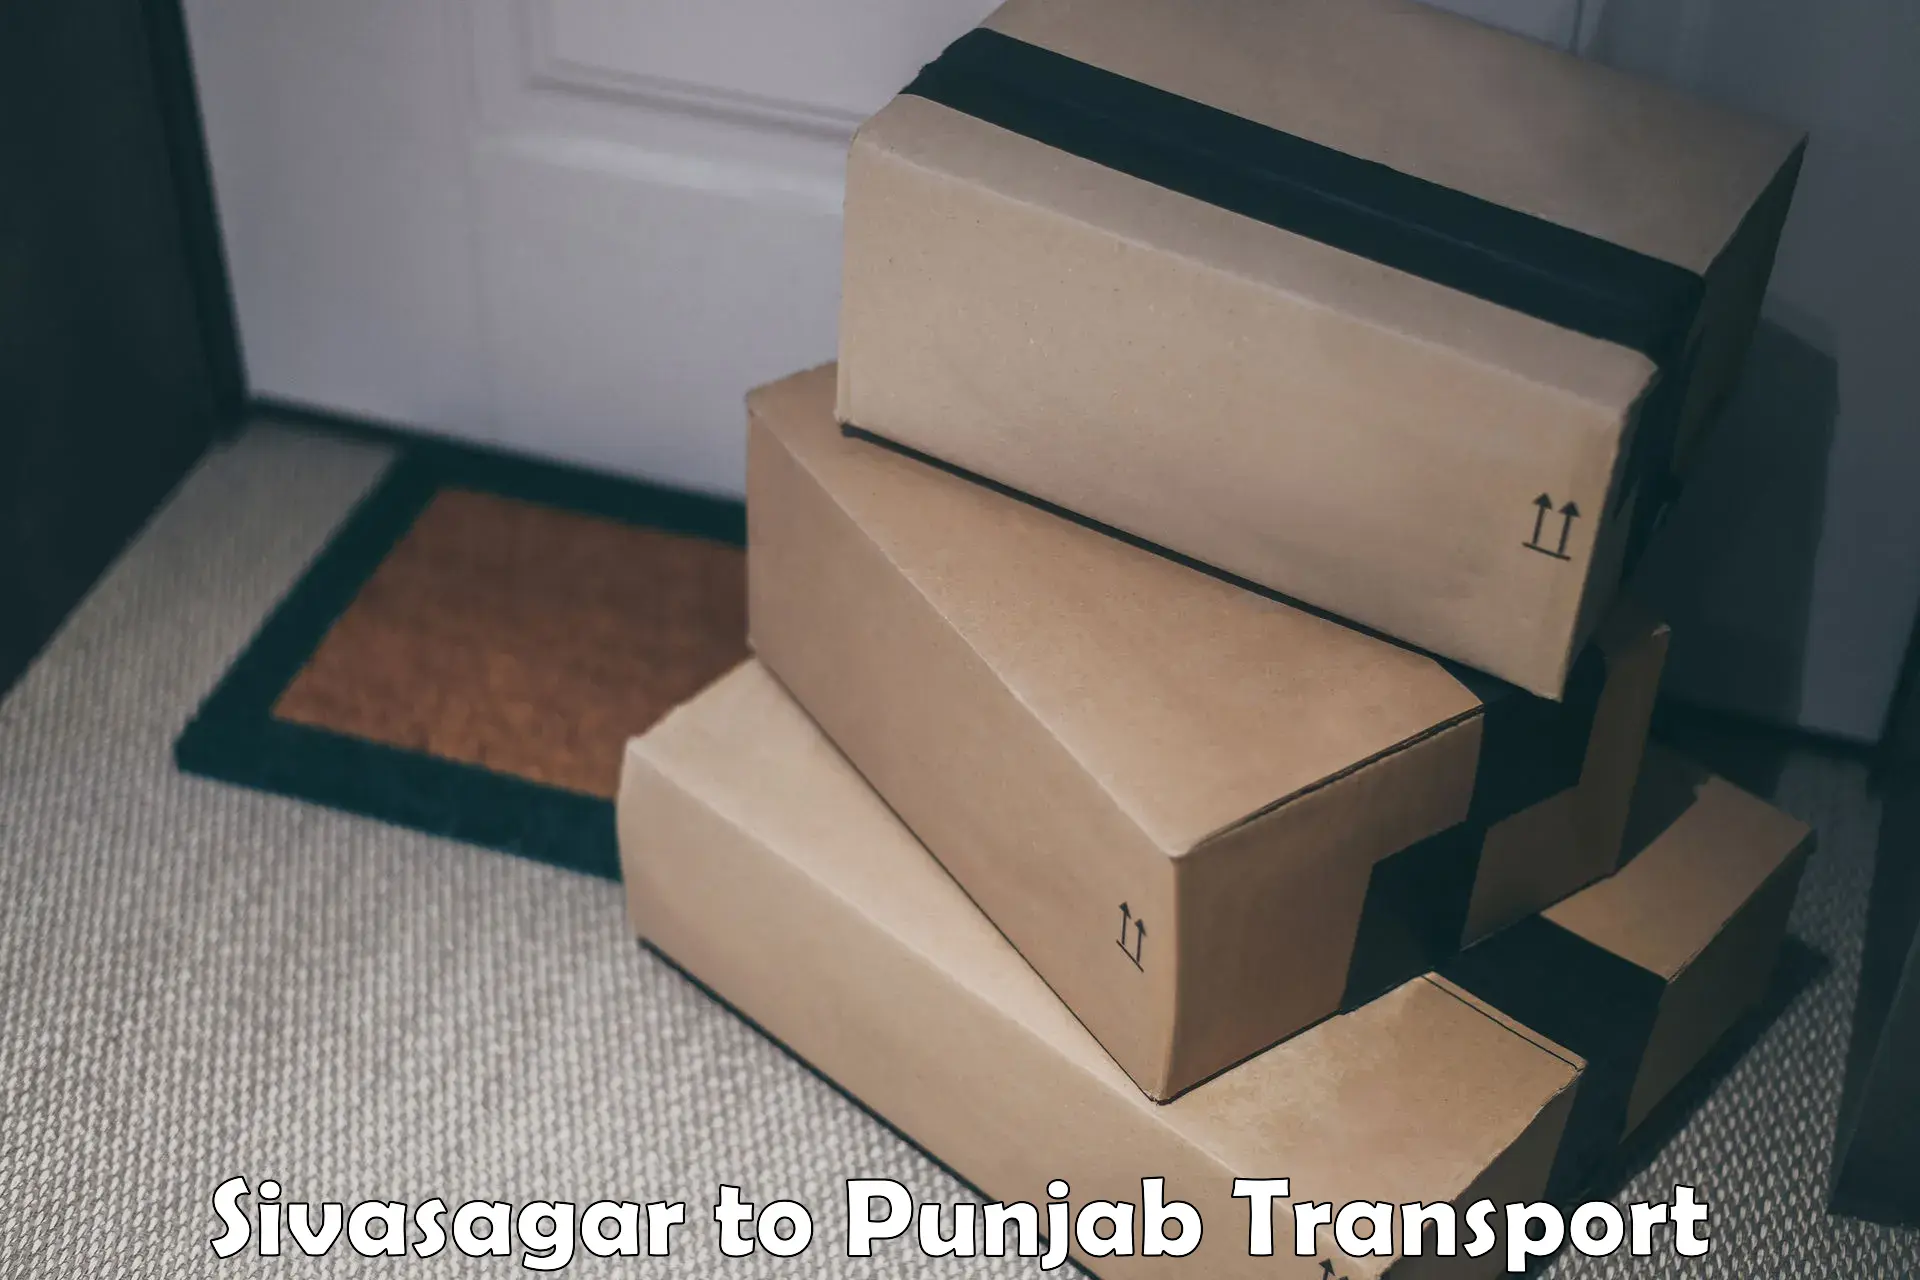 Two wheeler transport services Sivasagar to Punjab